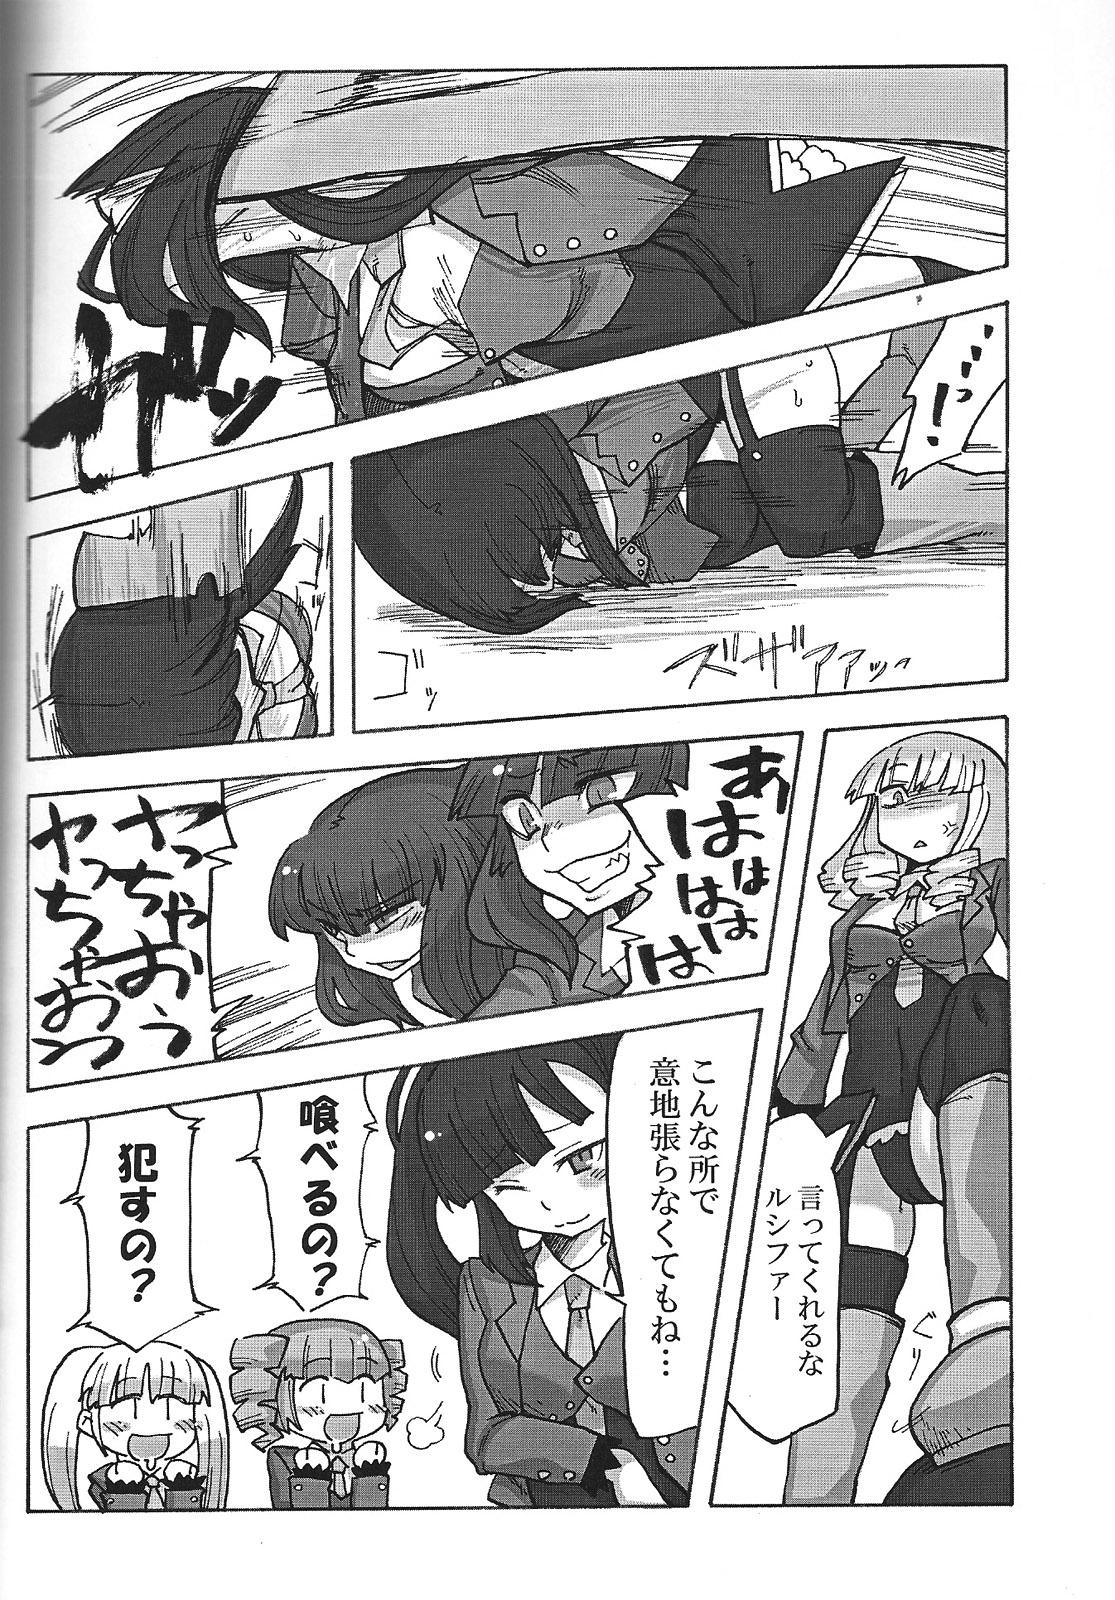 Rubbing Nakayoshi 7 Shimai - Umineko no naku koro ni Ftvgirls - Page 7